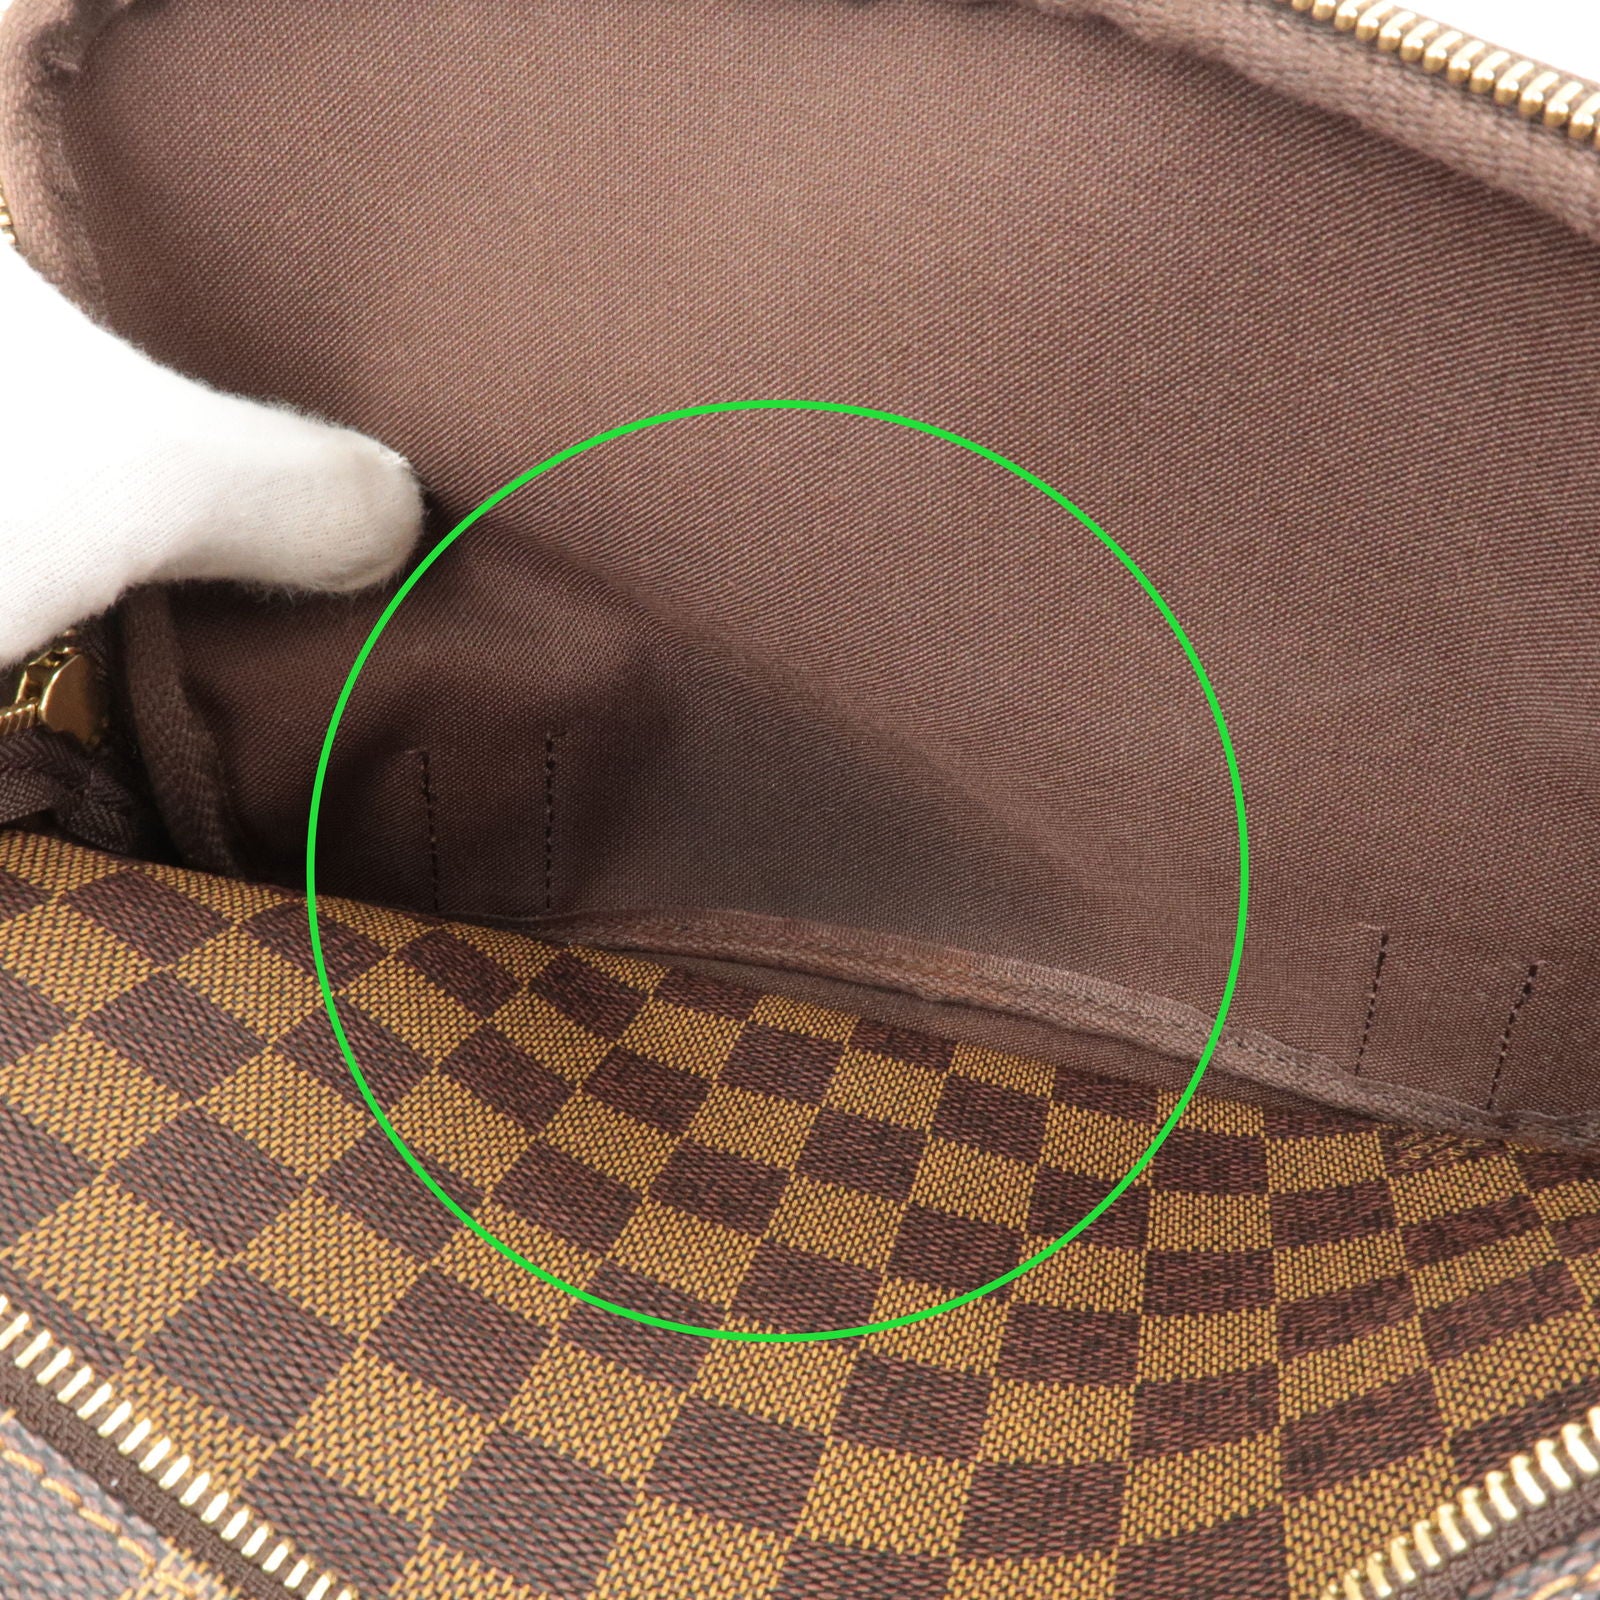 Louis Vuitton Shoulder Bag Damier Messenger Melville N51125